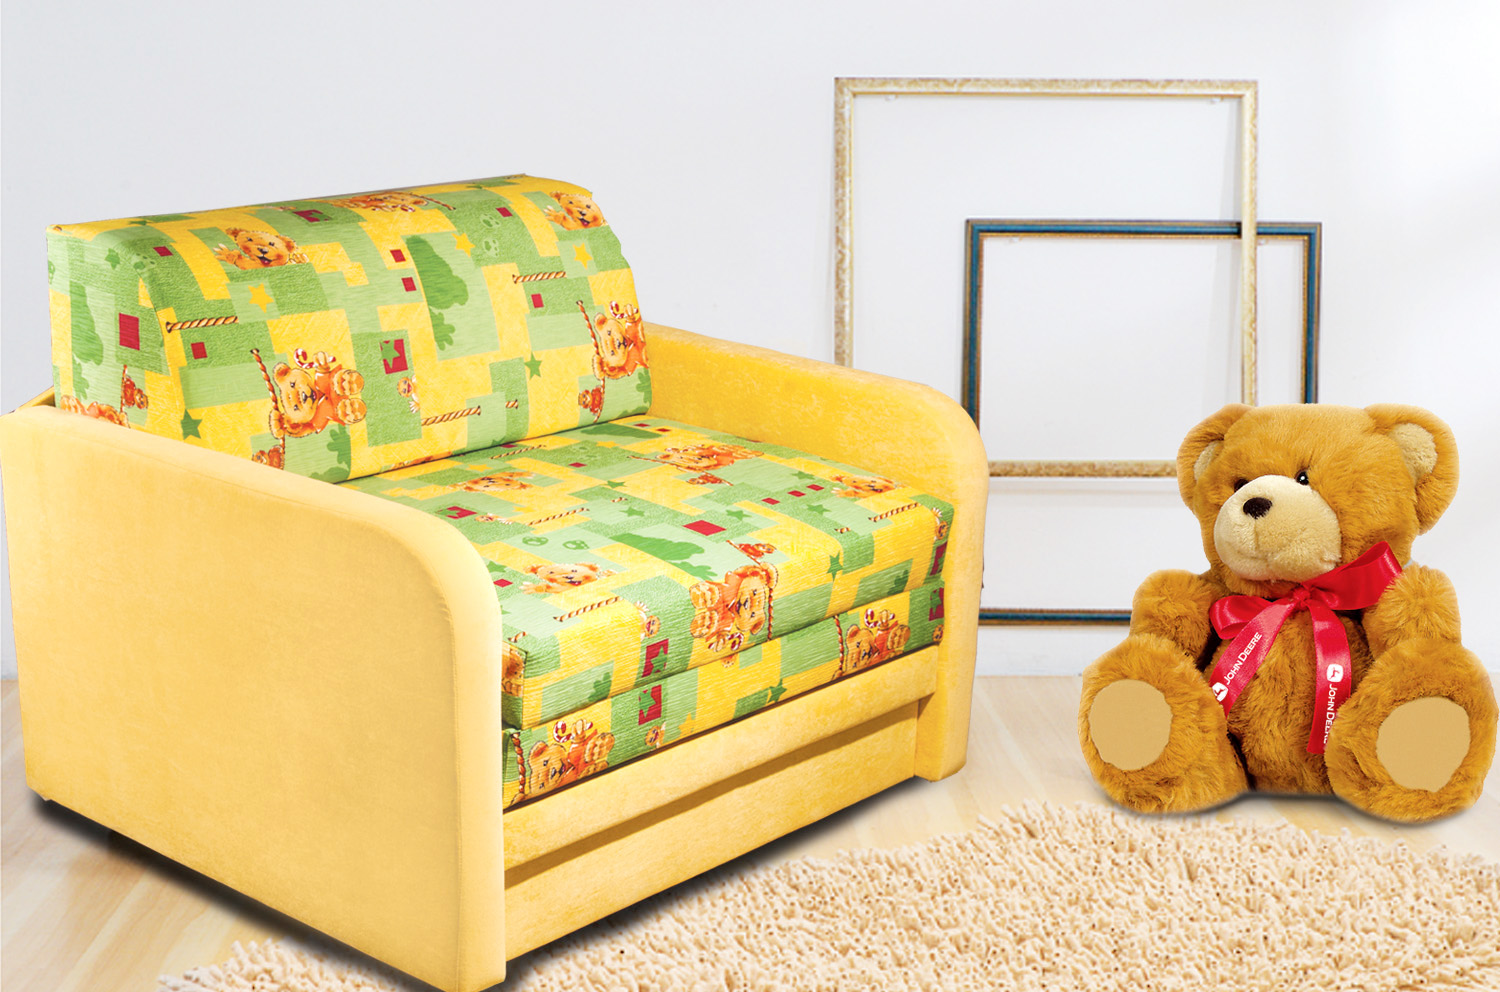 Как выбрать диван для детской комнаты